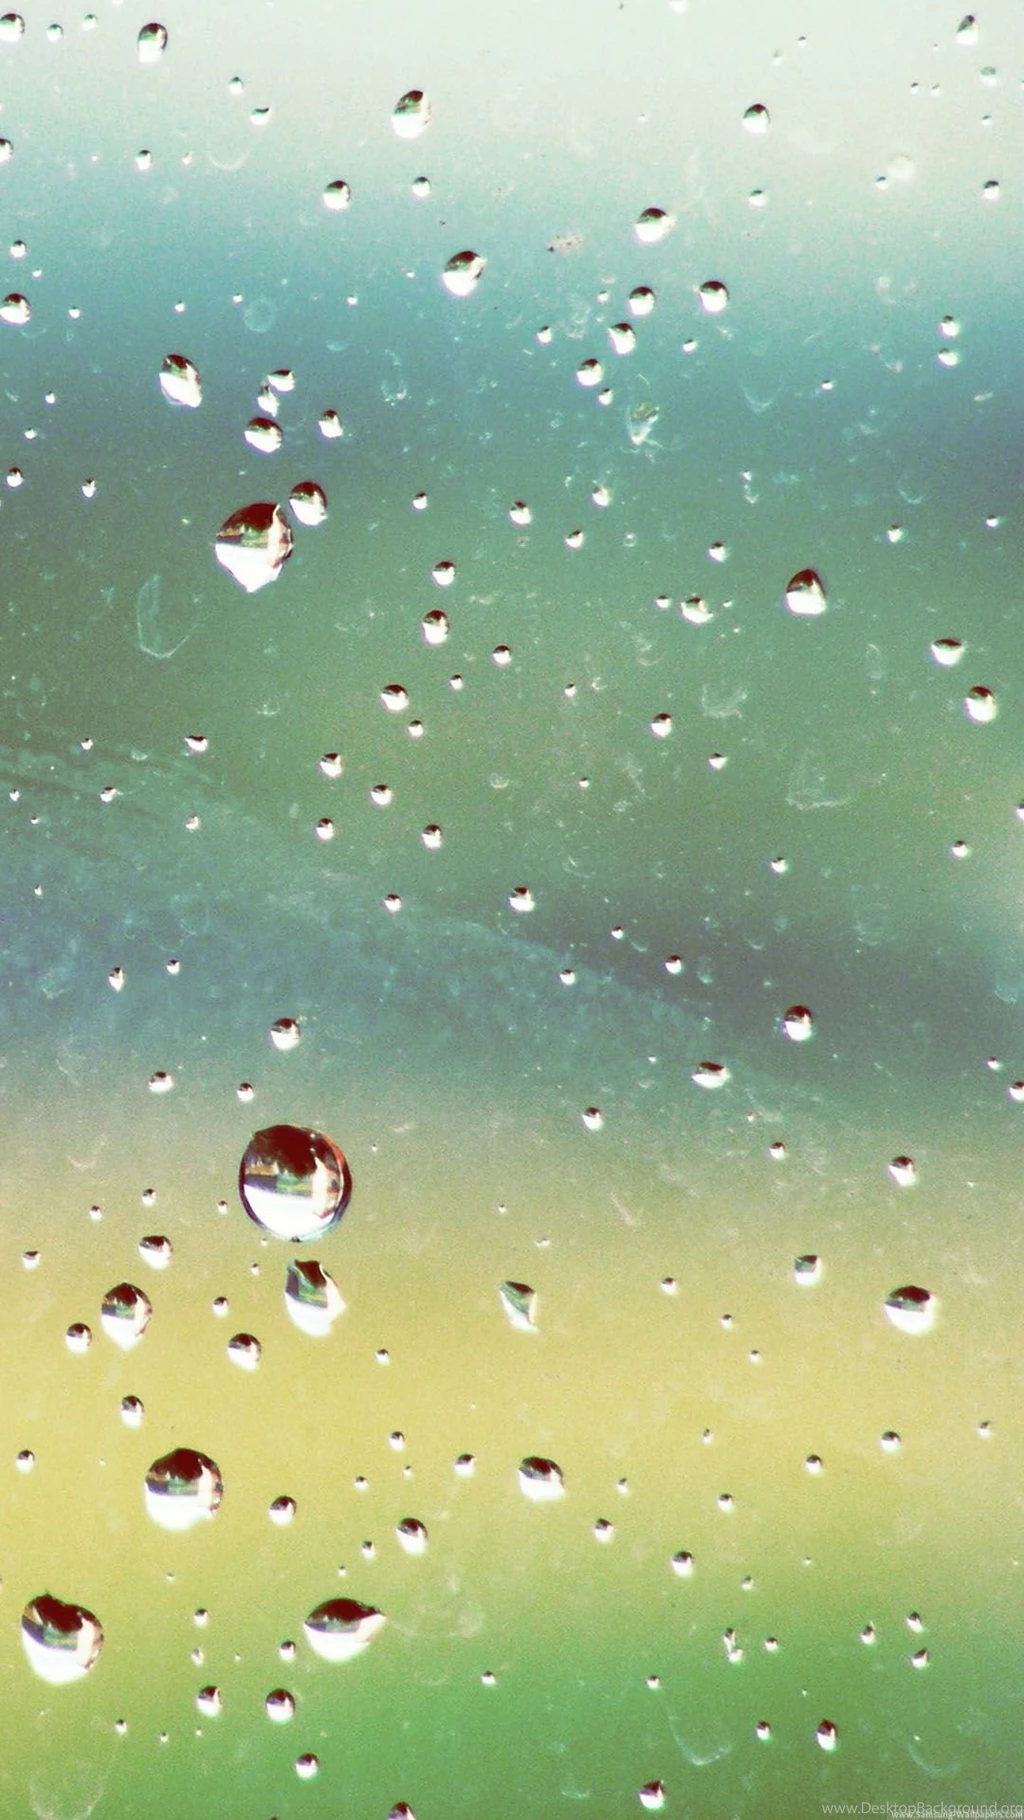 Rainy Window Nature Smartphone Wallpapers Hd Getphotos Desktop Background